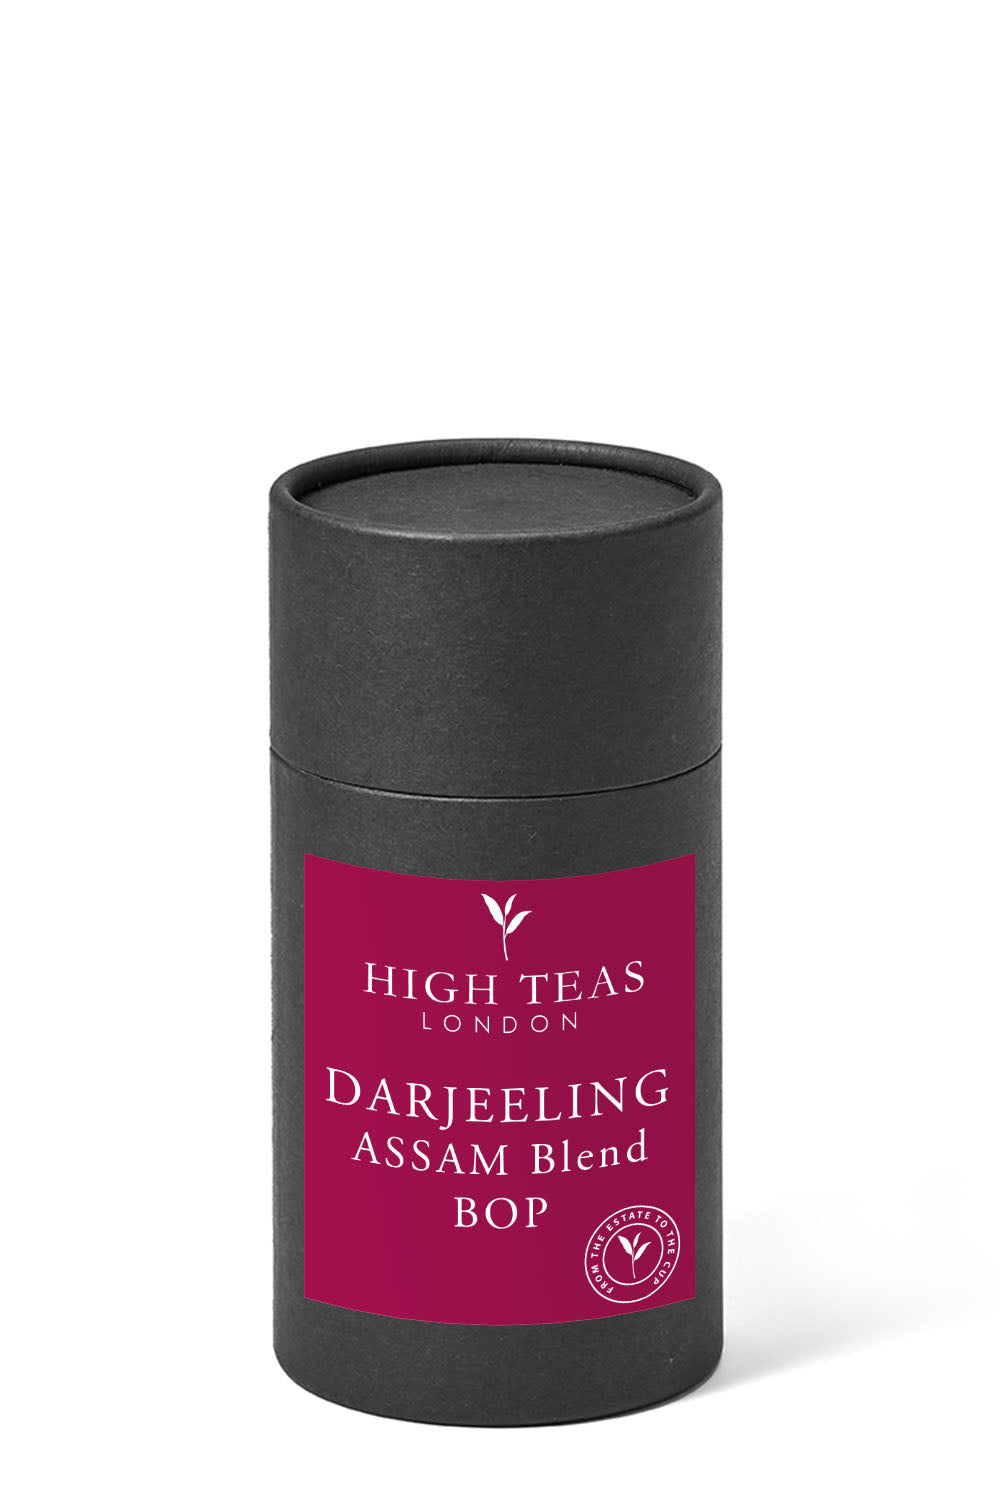 Darjeeling/Assam Blend BOP - Our Brunch Tea-60g gift-Loose Leaf Tea-High Teas